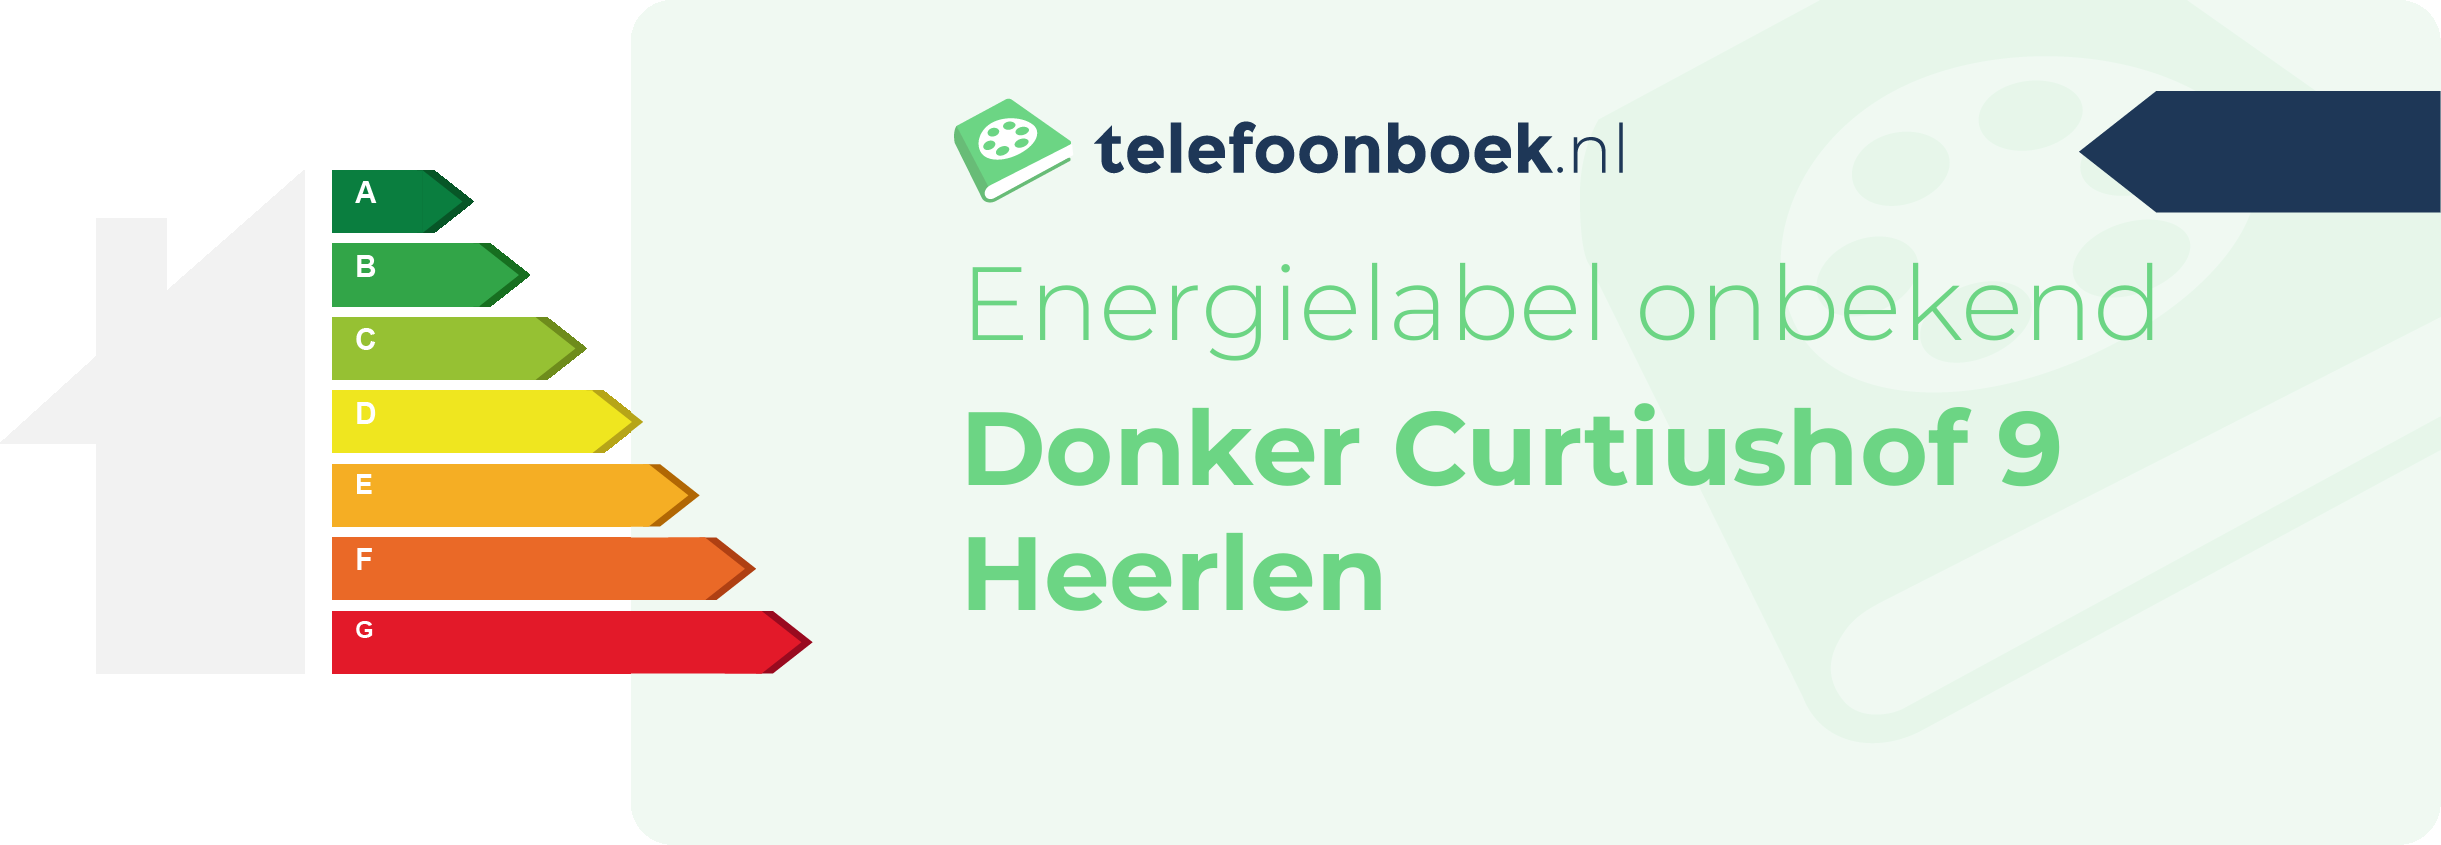 Energielabel Donker Curtiushof 9 Heerlen